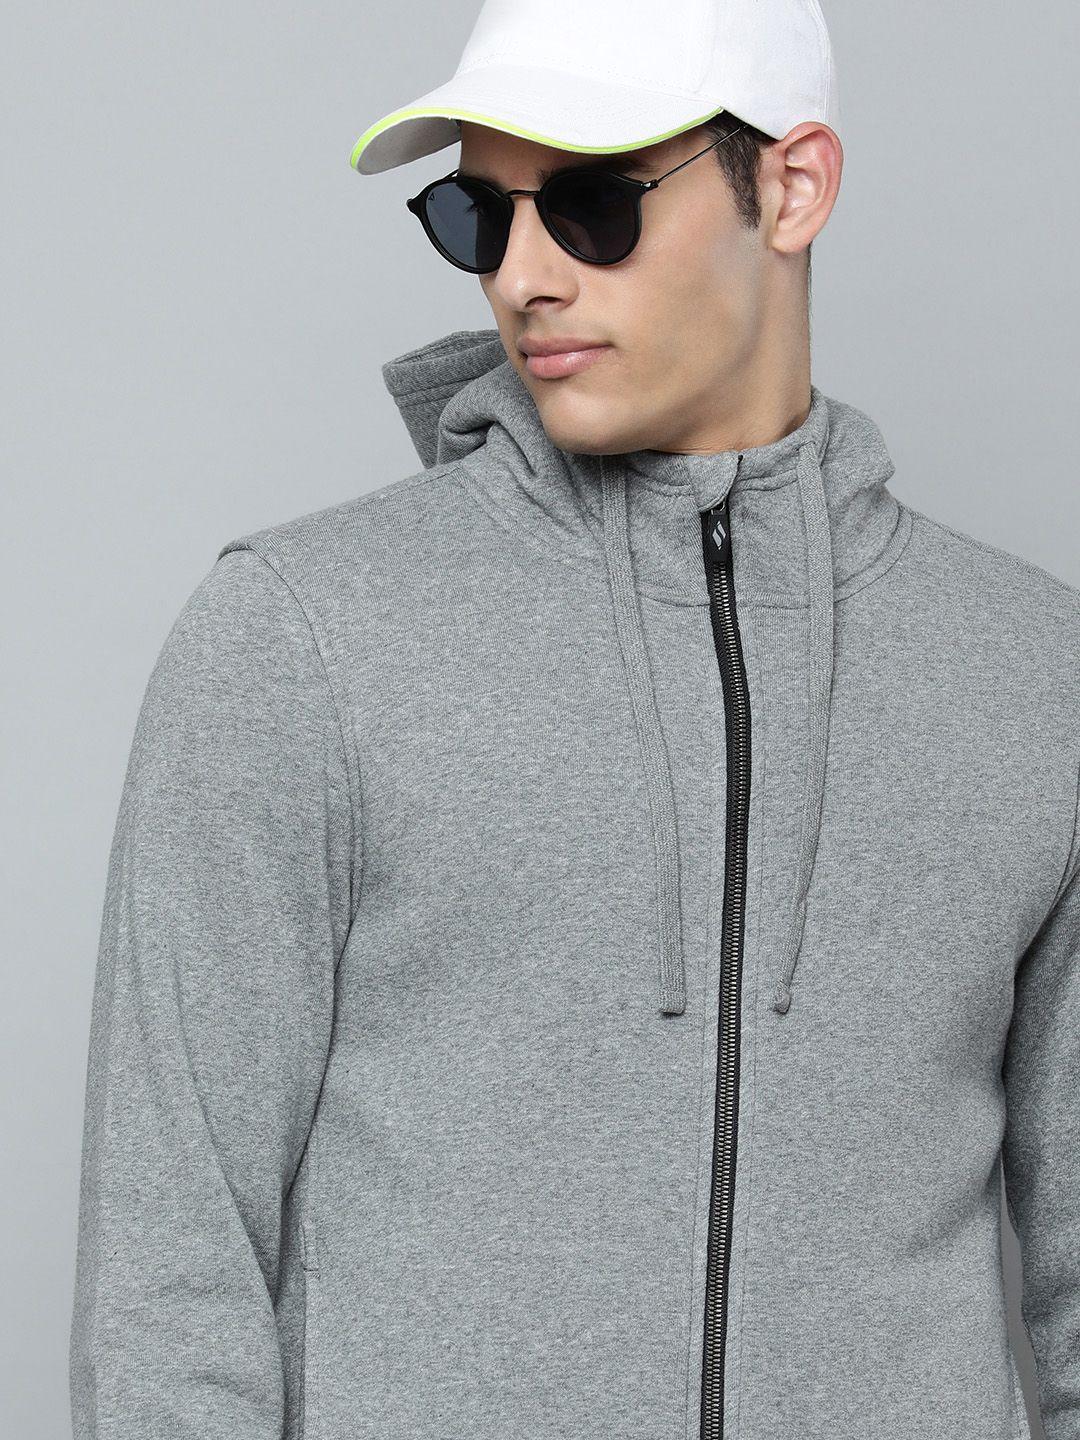 skechers-men-grey-melange-solid-hooded-sweats-lounge-sherpa-sweatshirt